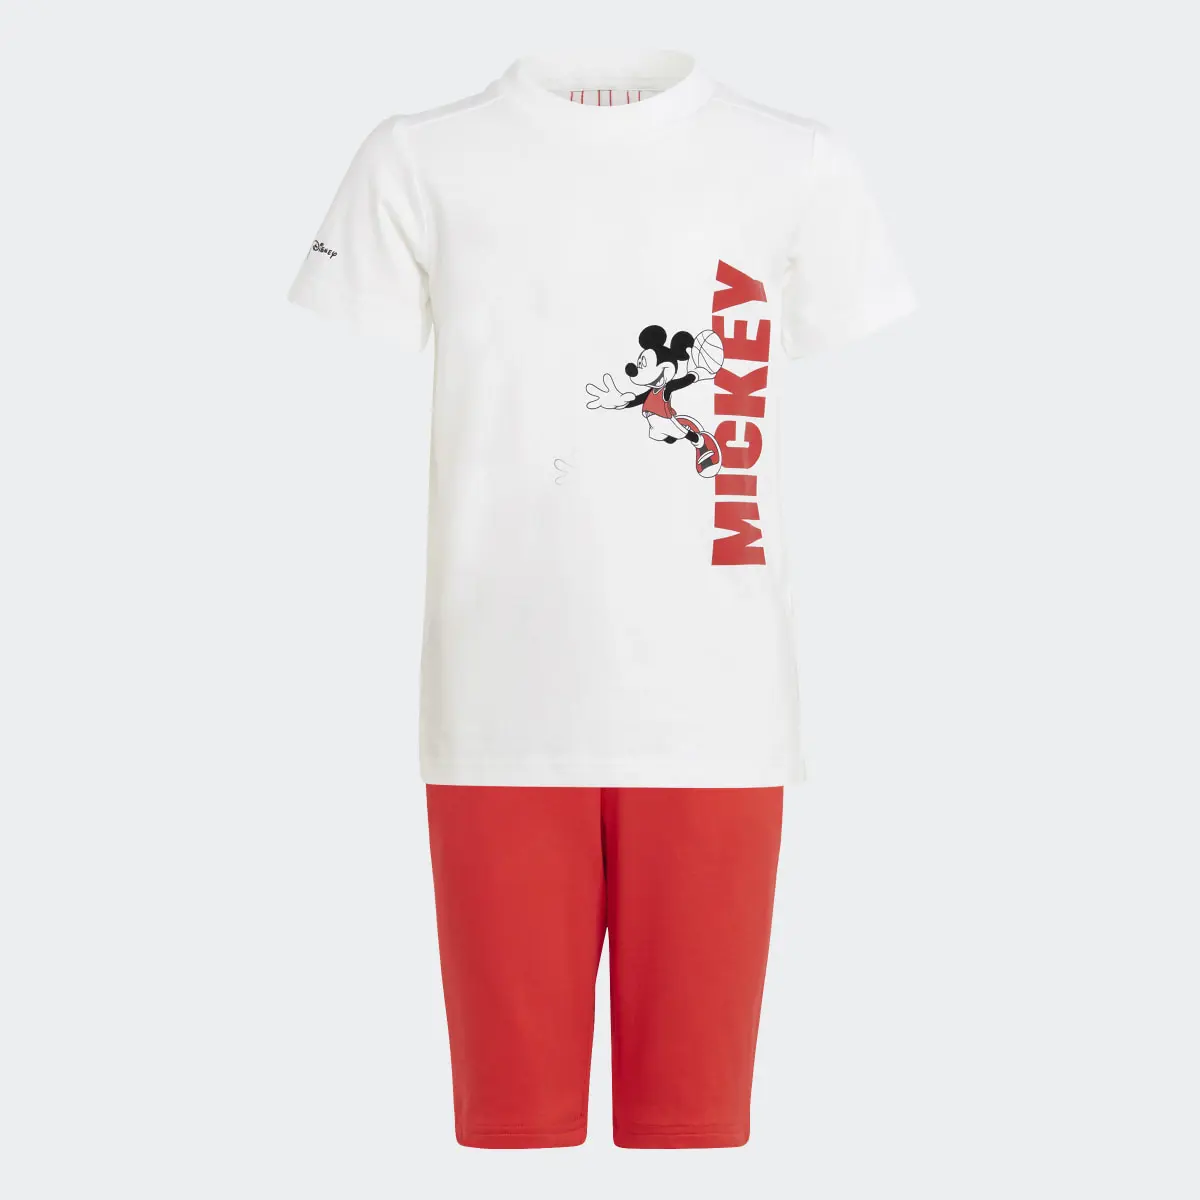 Adidas Conjunto Verano Disney Mickey Mouse. 1